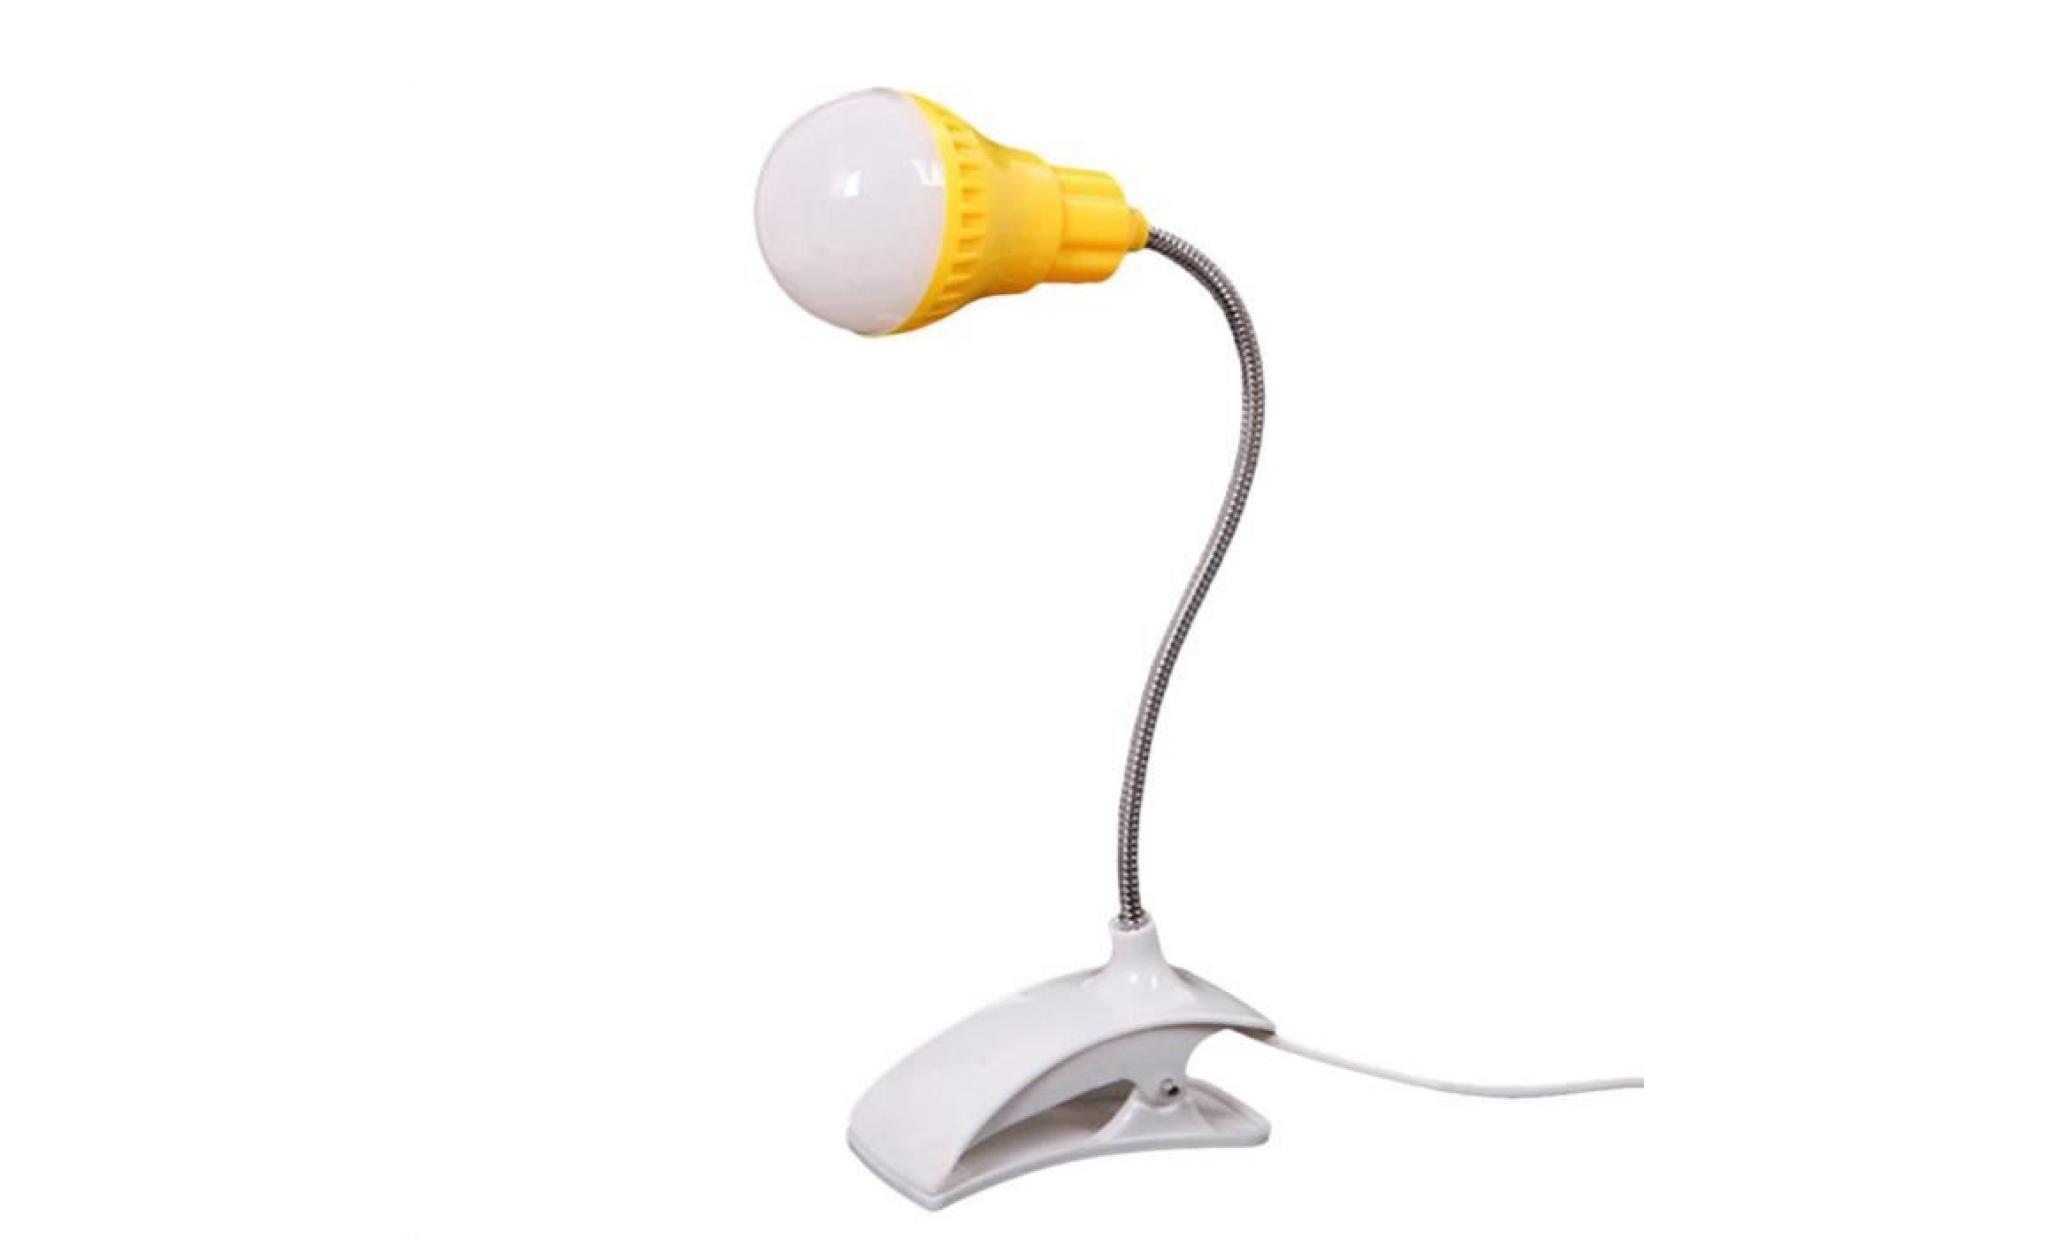 nouveau support de table lampe usb du personnel étudiant de lecture table bureau lampe gn whi76 pas cher